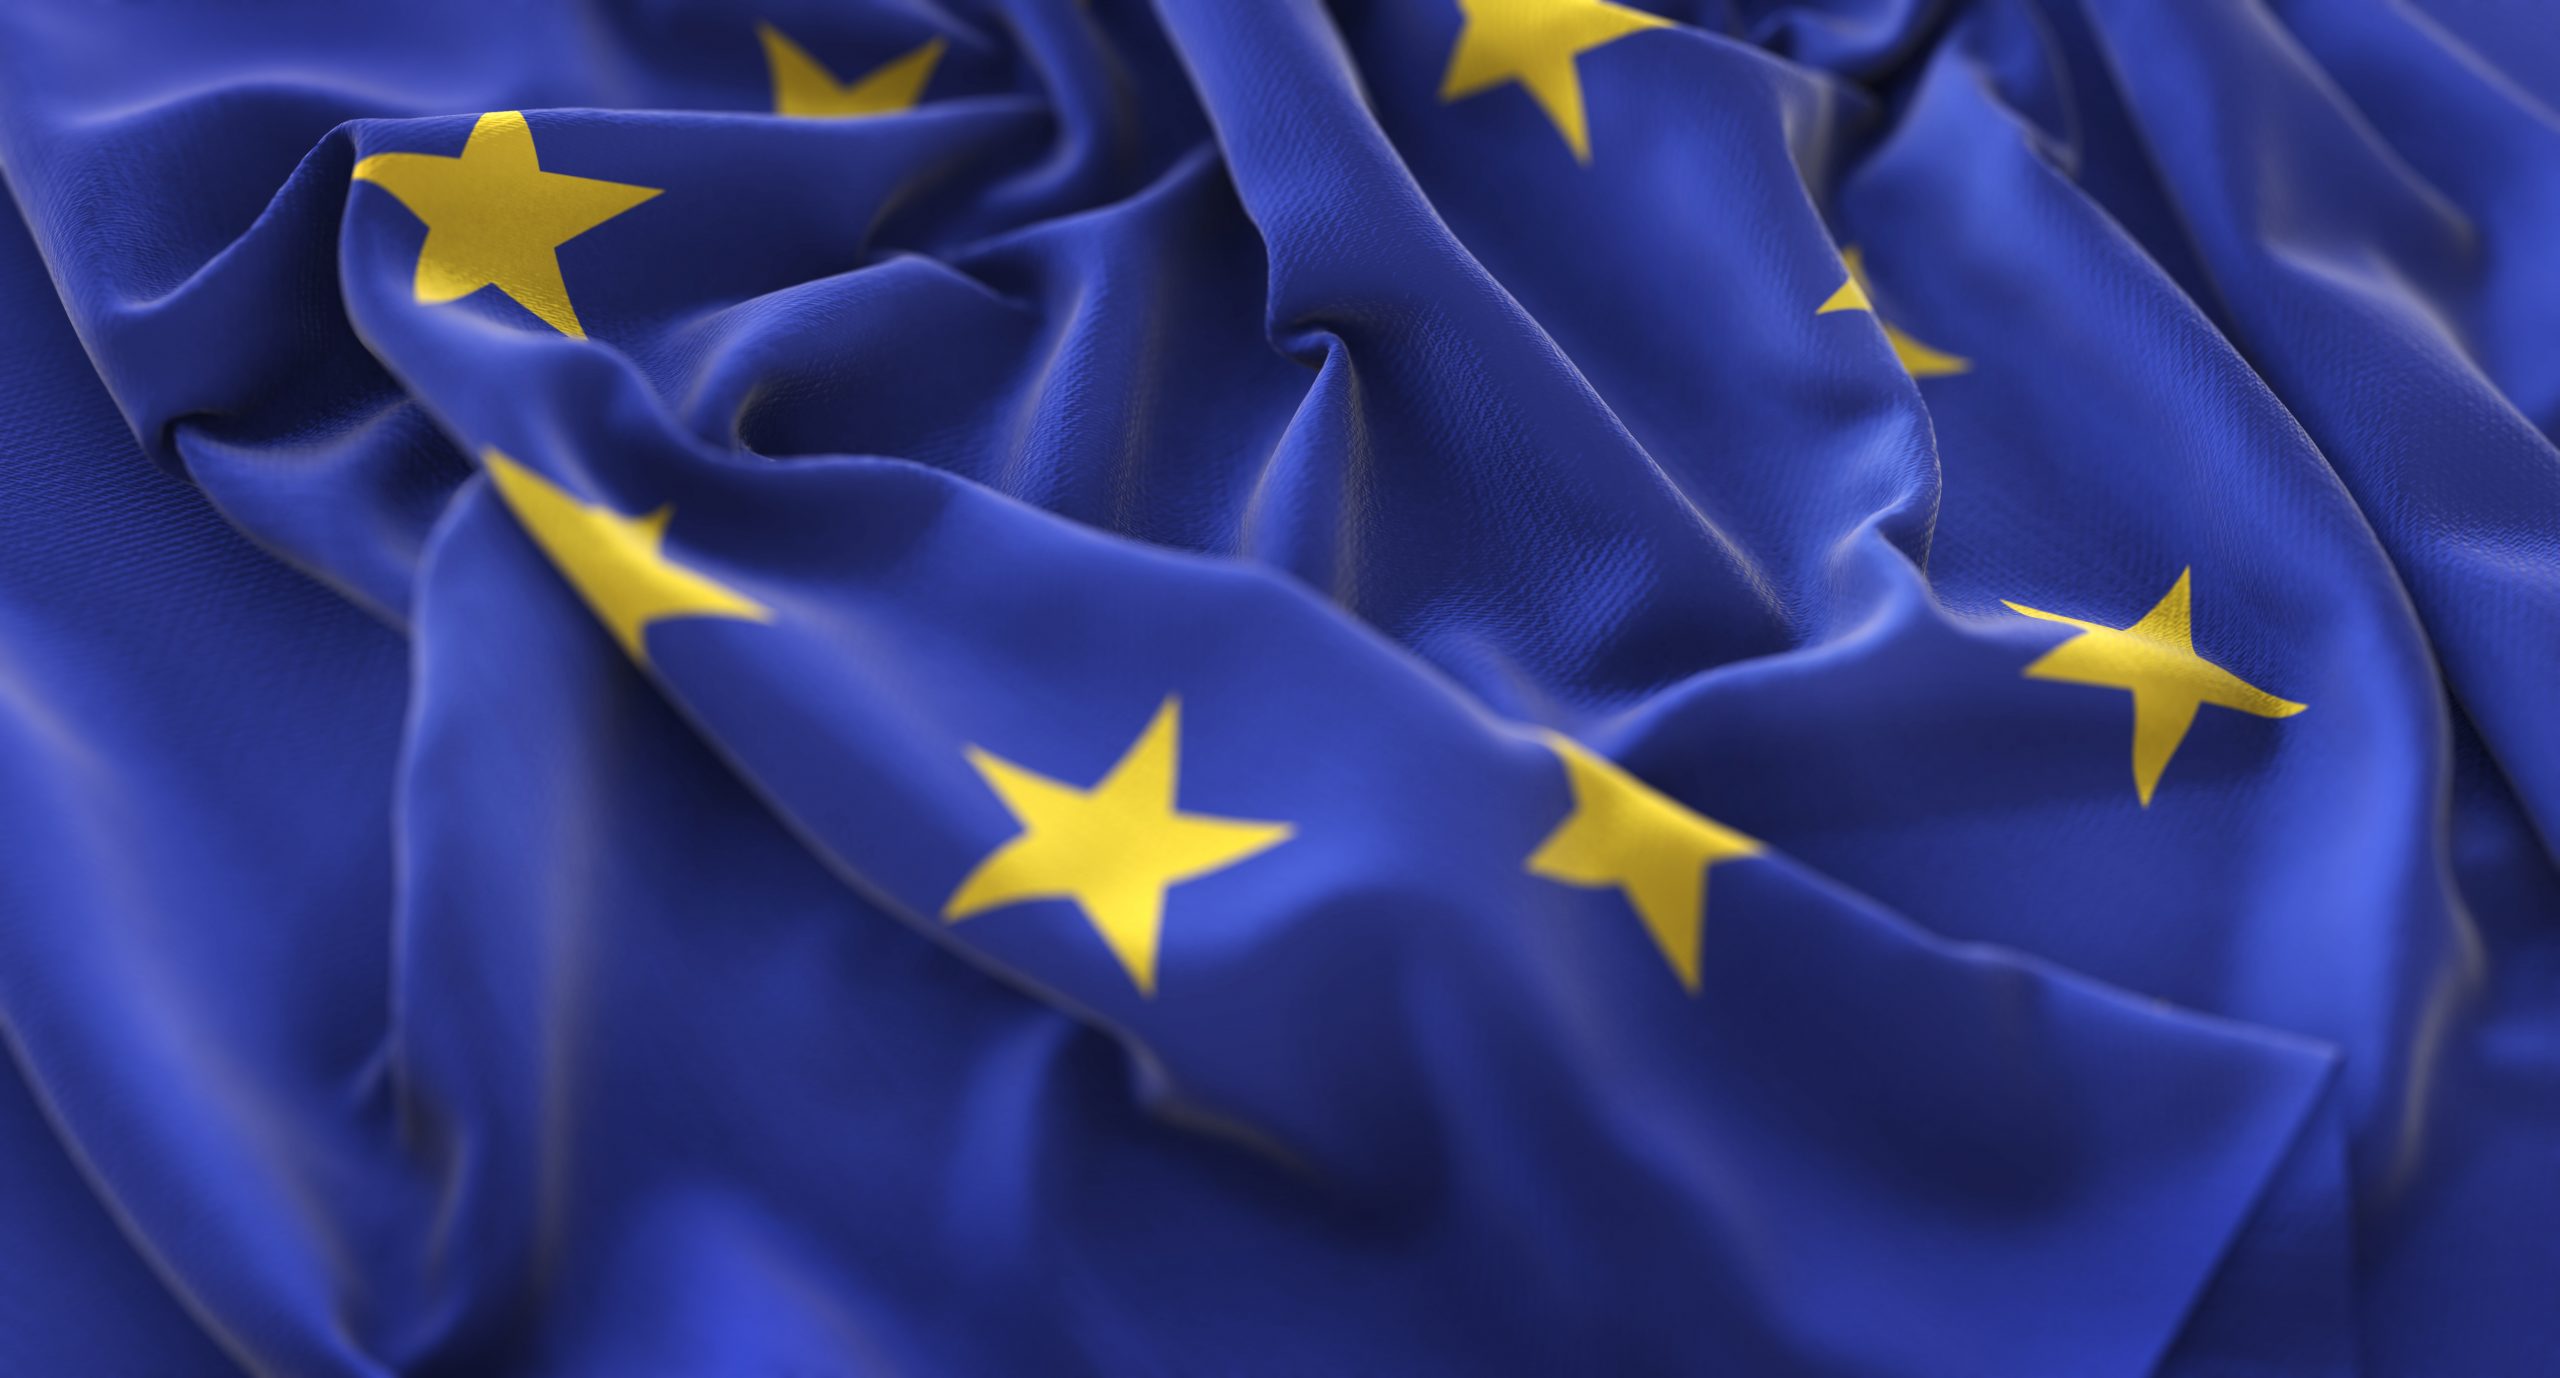 Ley sobre los mercados digitales: Unión Europea llegó a un acuerdo sobre regulación a empresas tecnológicas